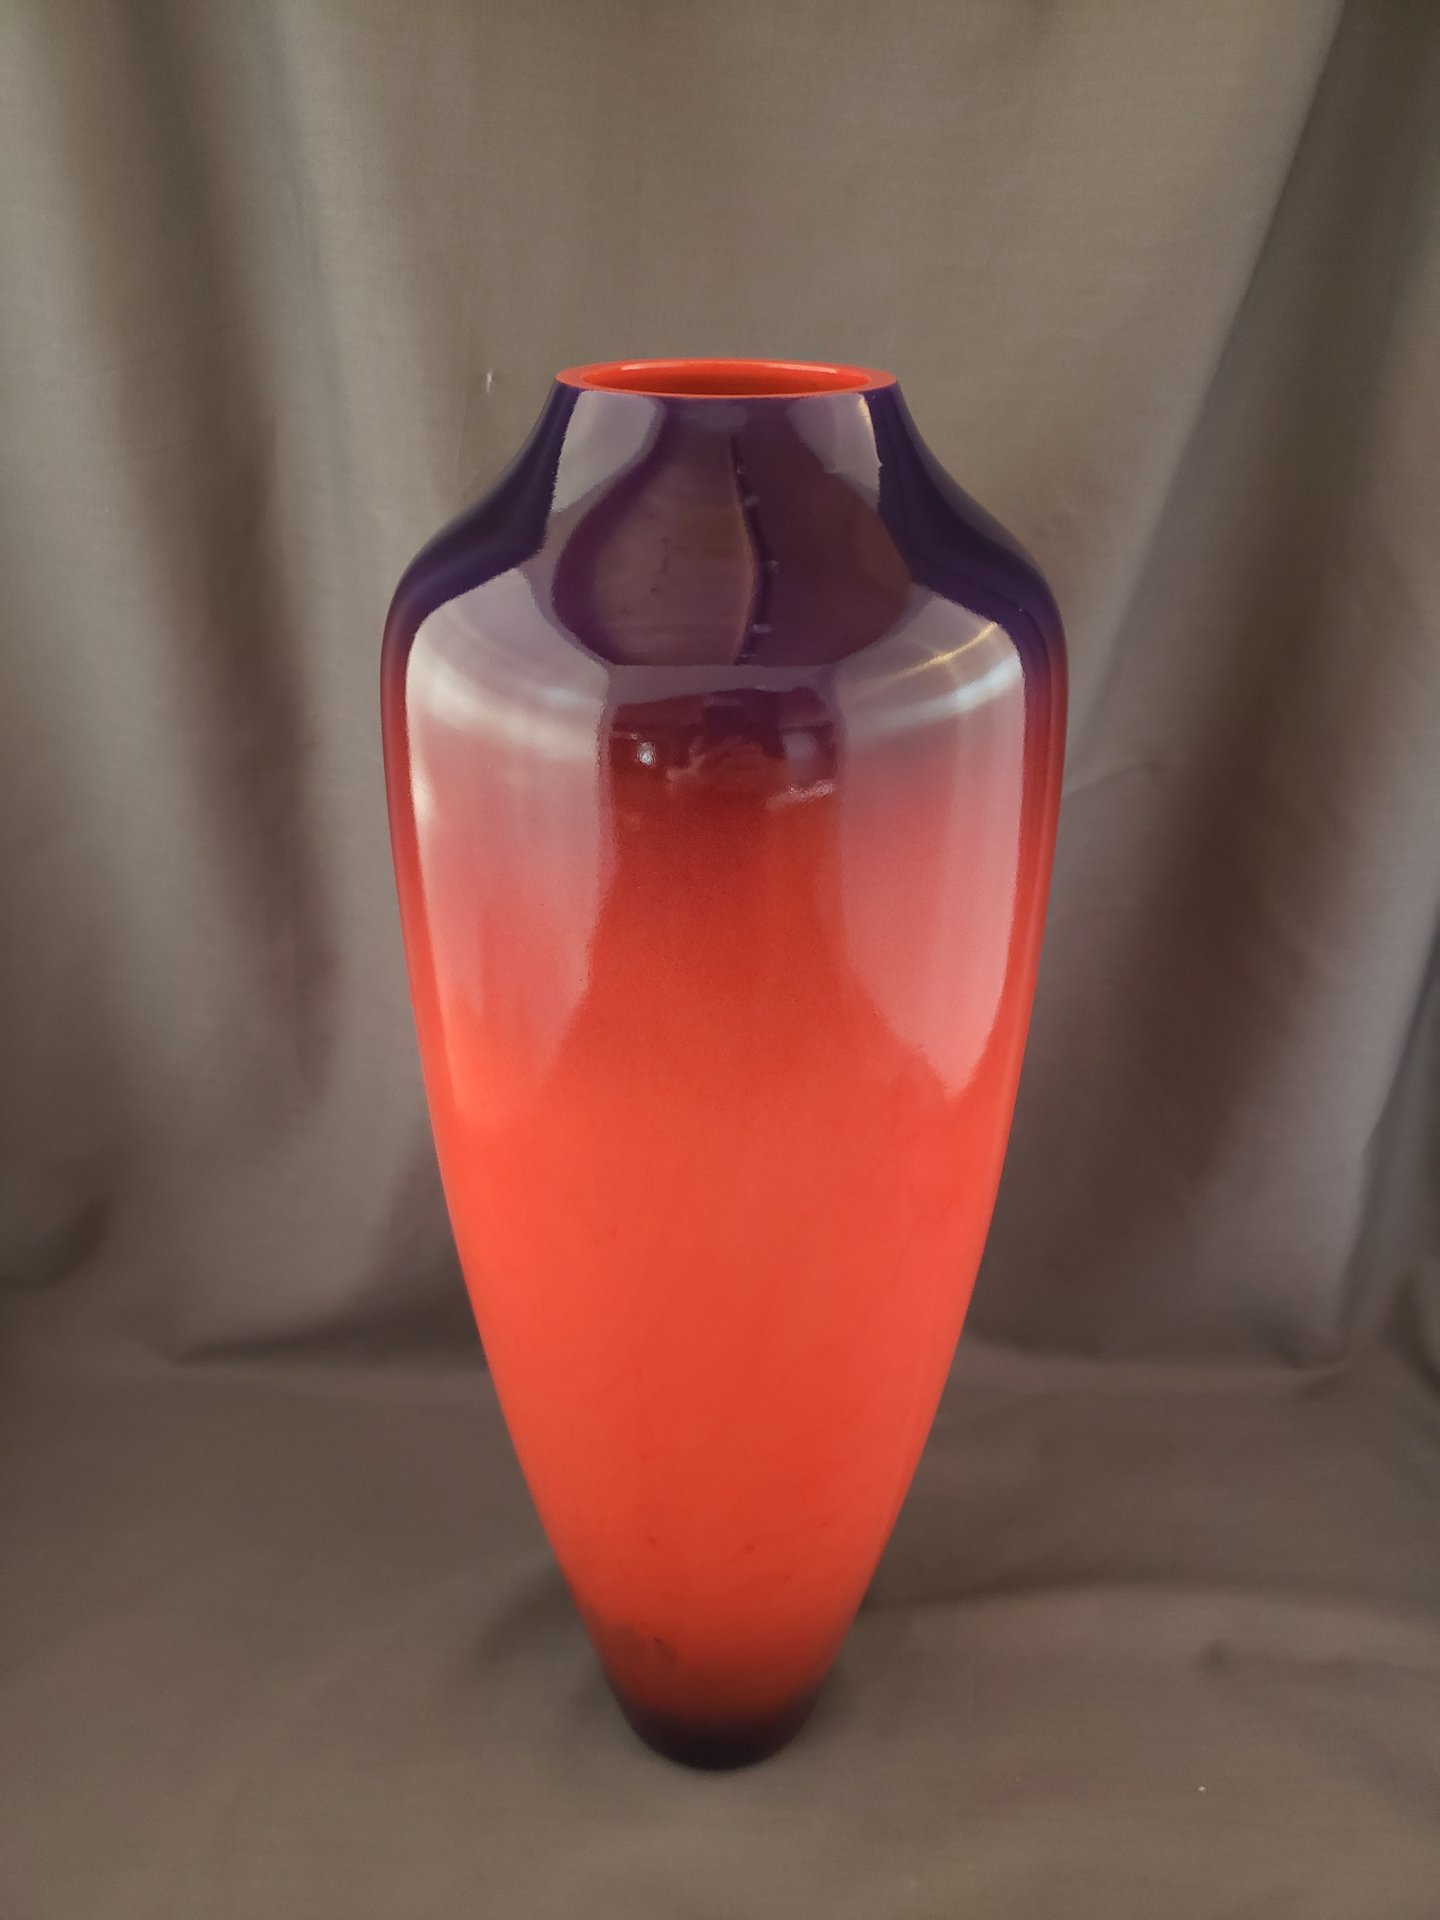 Maple Vase with Airbrushing